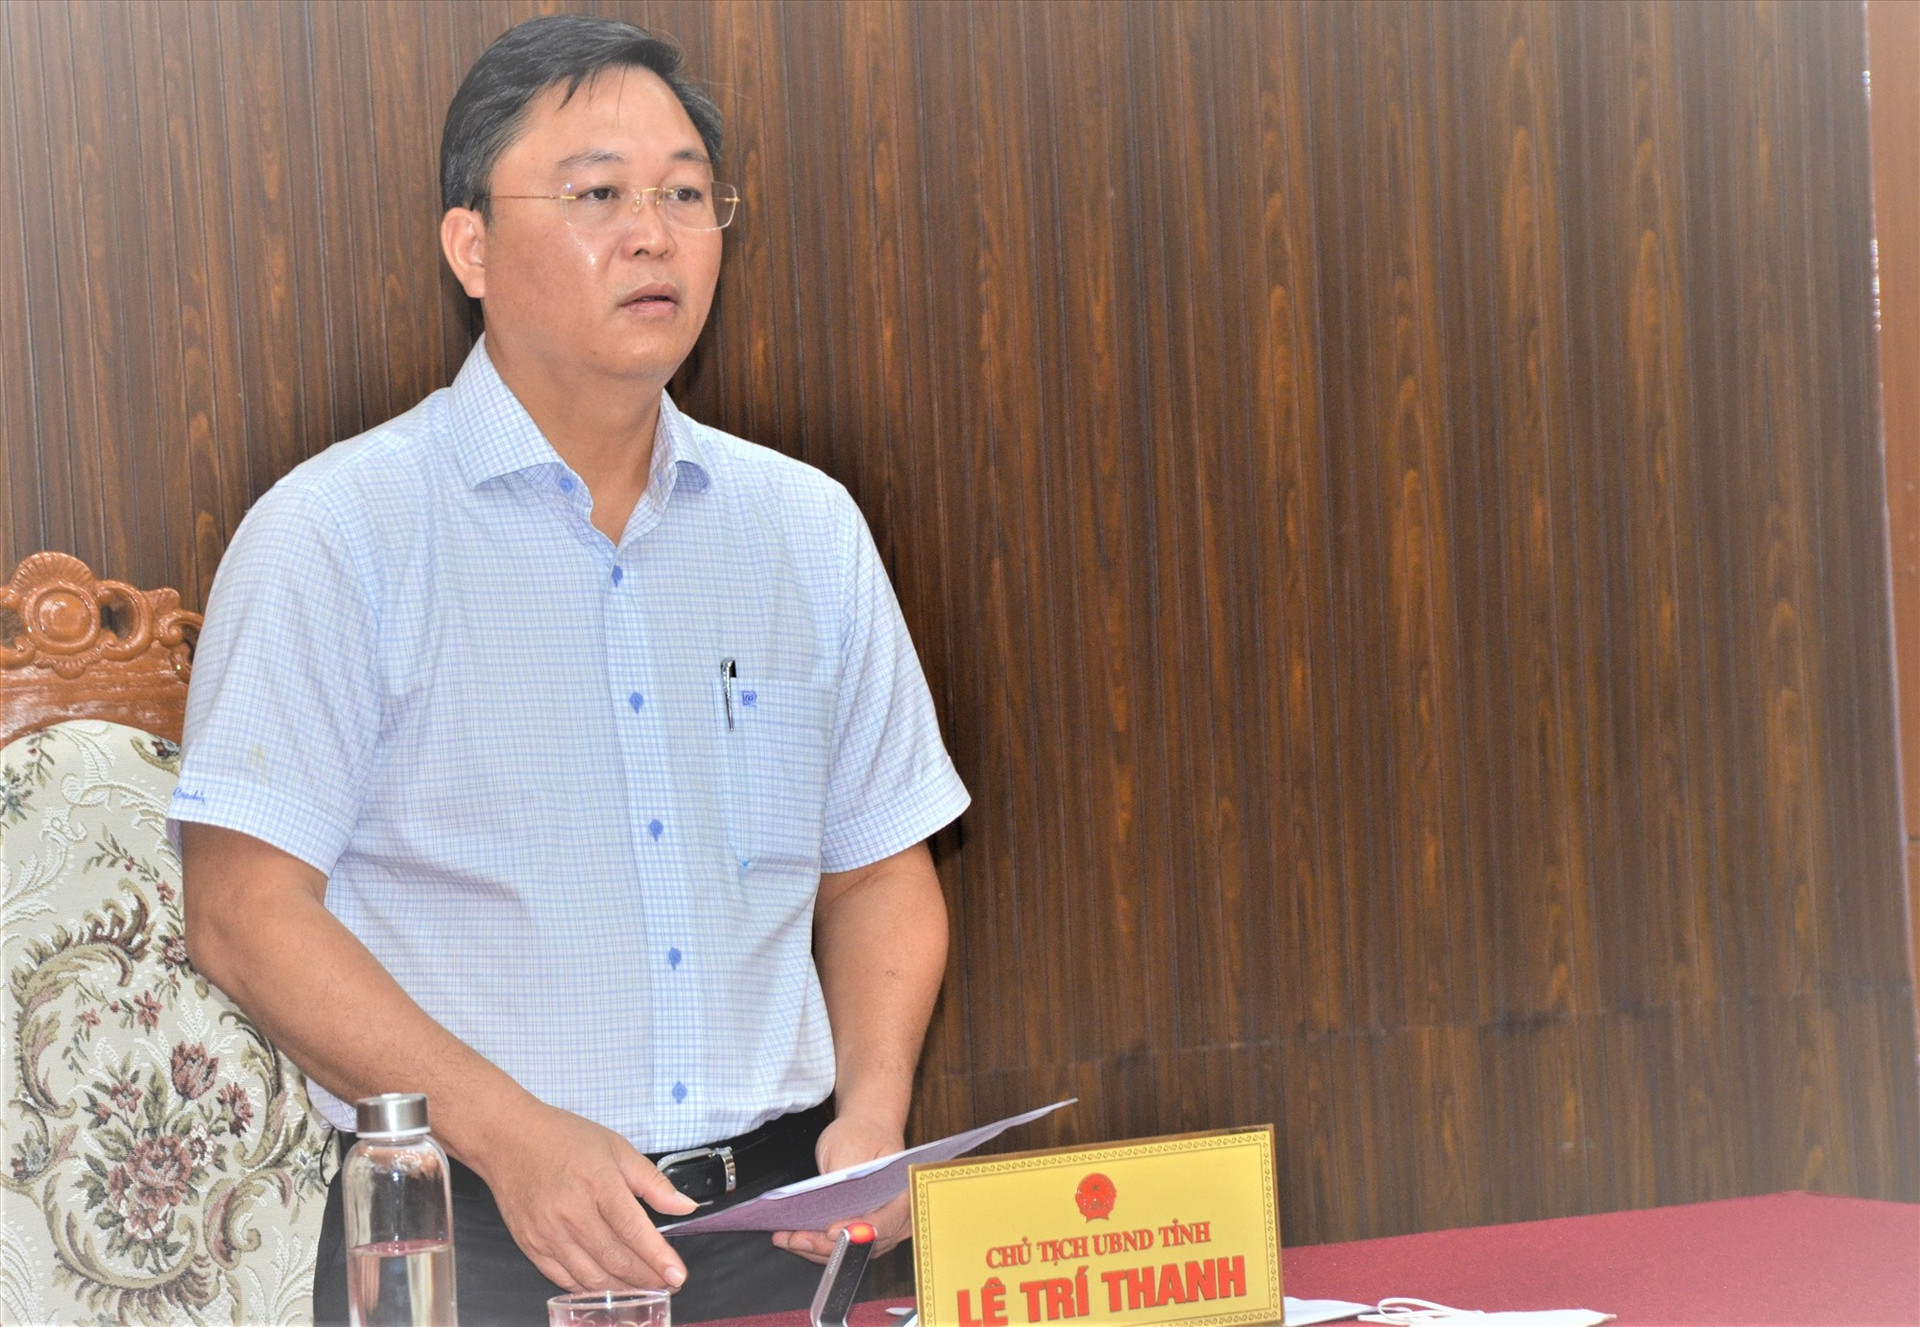 Chủ tịch UBND tỉnh Lê Trí Thanh chủ trì phiên họp triển khai các kết luận của Thủ tướng Chính phủ với các sở, ngành và địa phương liên quan. Ảnh: H.PHÚC